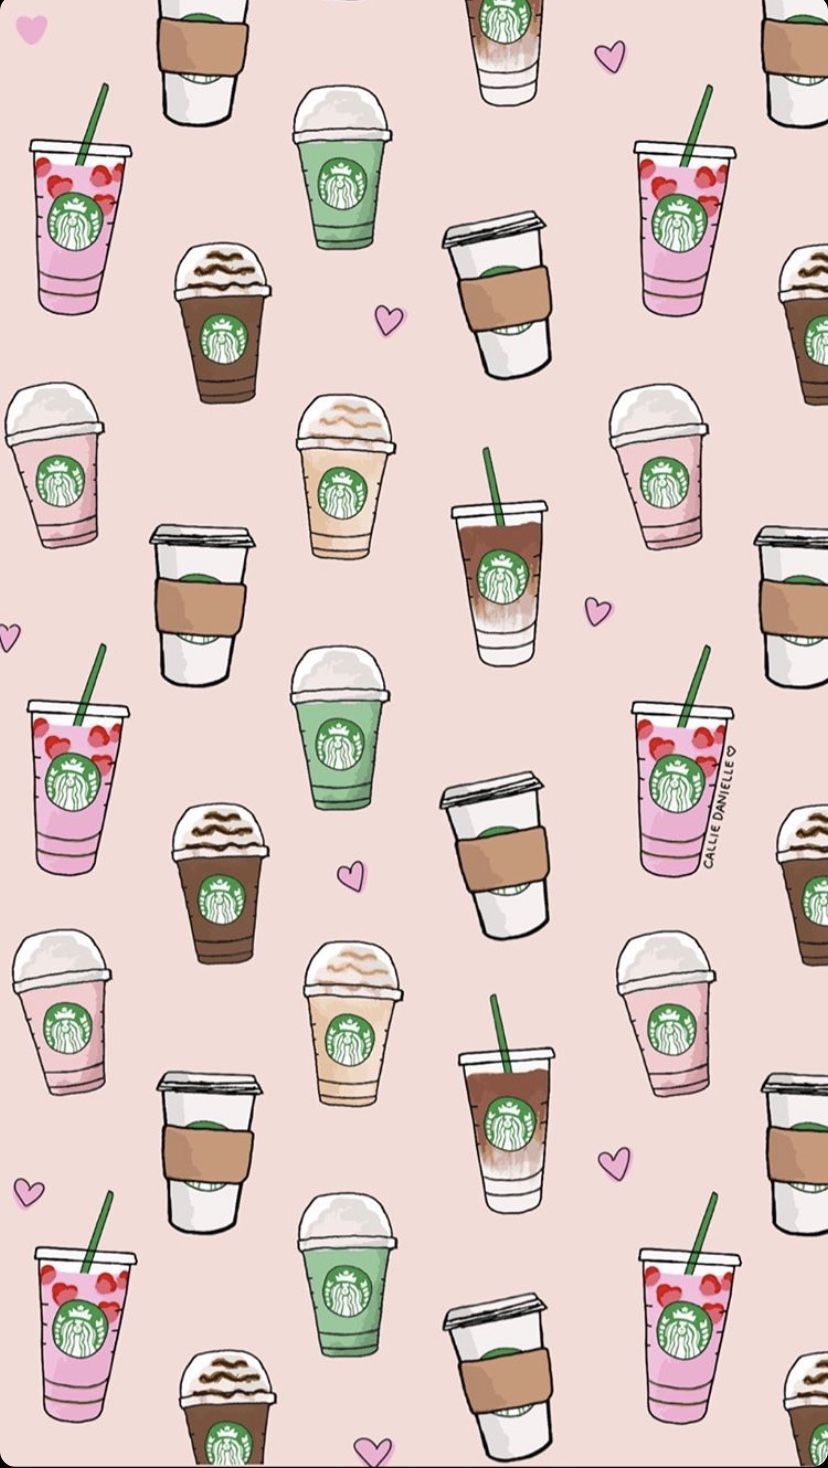 Làm cho màn hình của bạn trở nên đầy sáng tạo hơn với những bộ hình nền đồ họa hoạt hình Starbucks dễ thương, bạn sẽ không khỏi ngạc nhiên với những lý cà phê được thiết kế theo hình ảnh hoạt hình đáng yêu này.